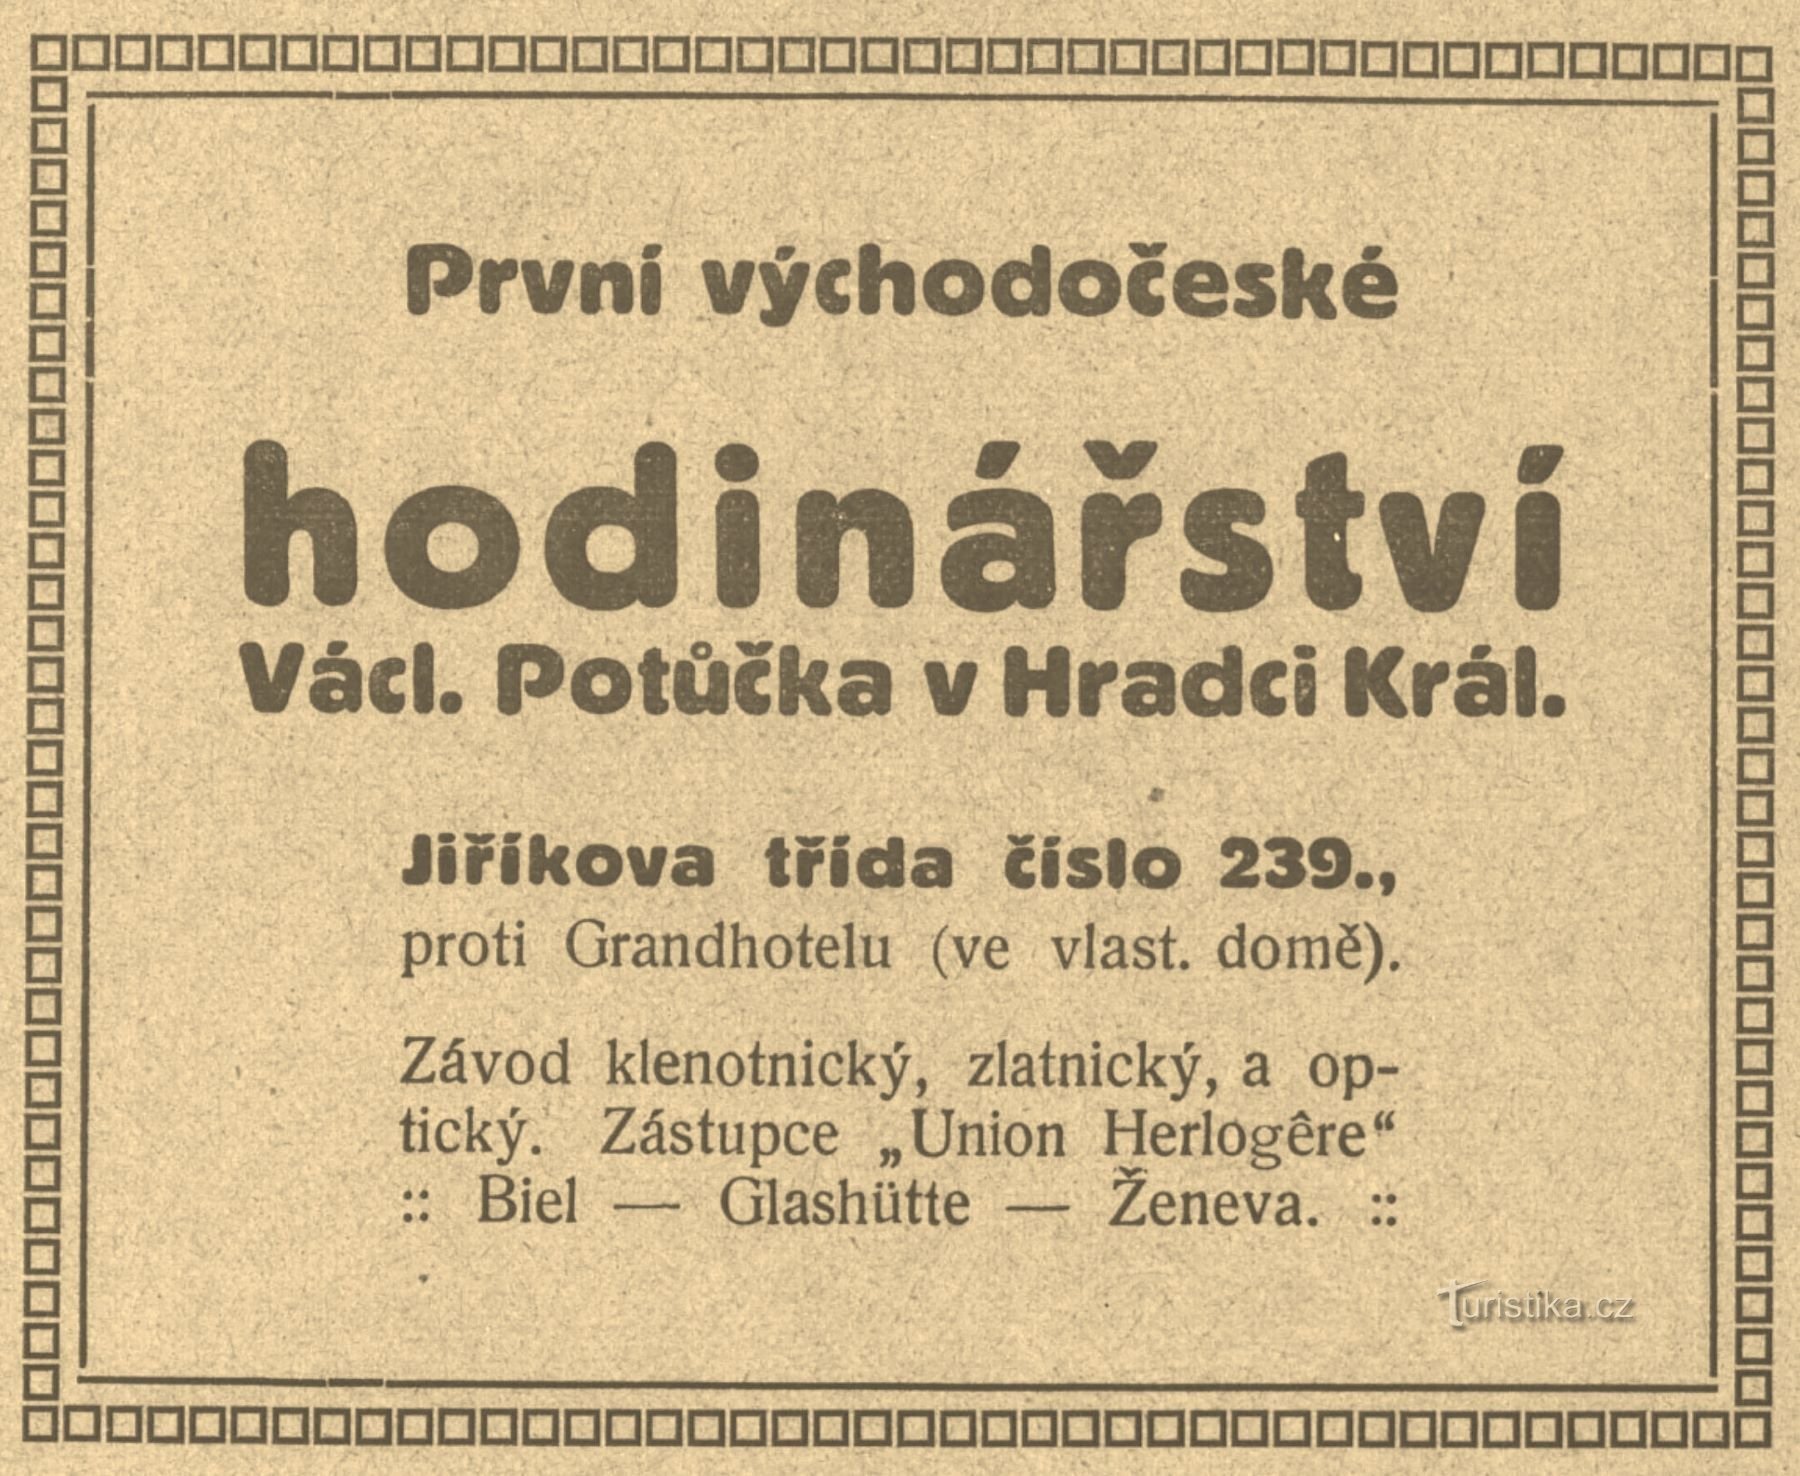 Časovni oglas Potůčkovega urarskega podjetja iz leta 1911